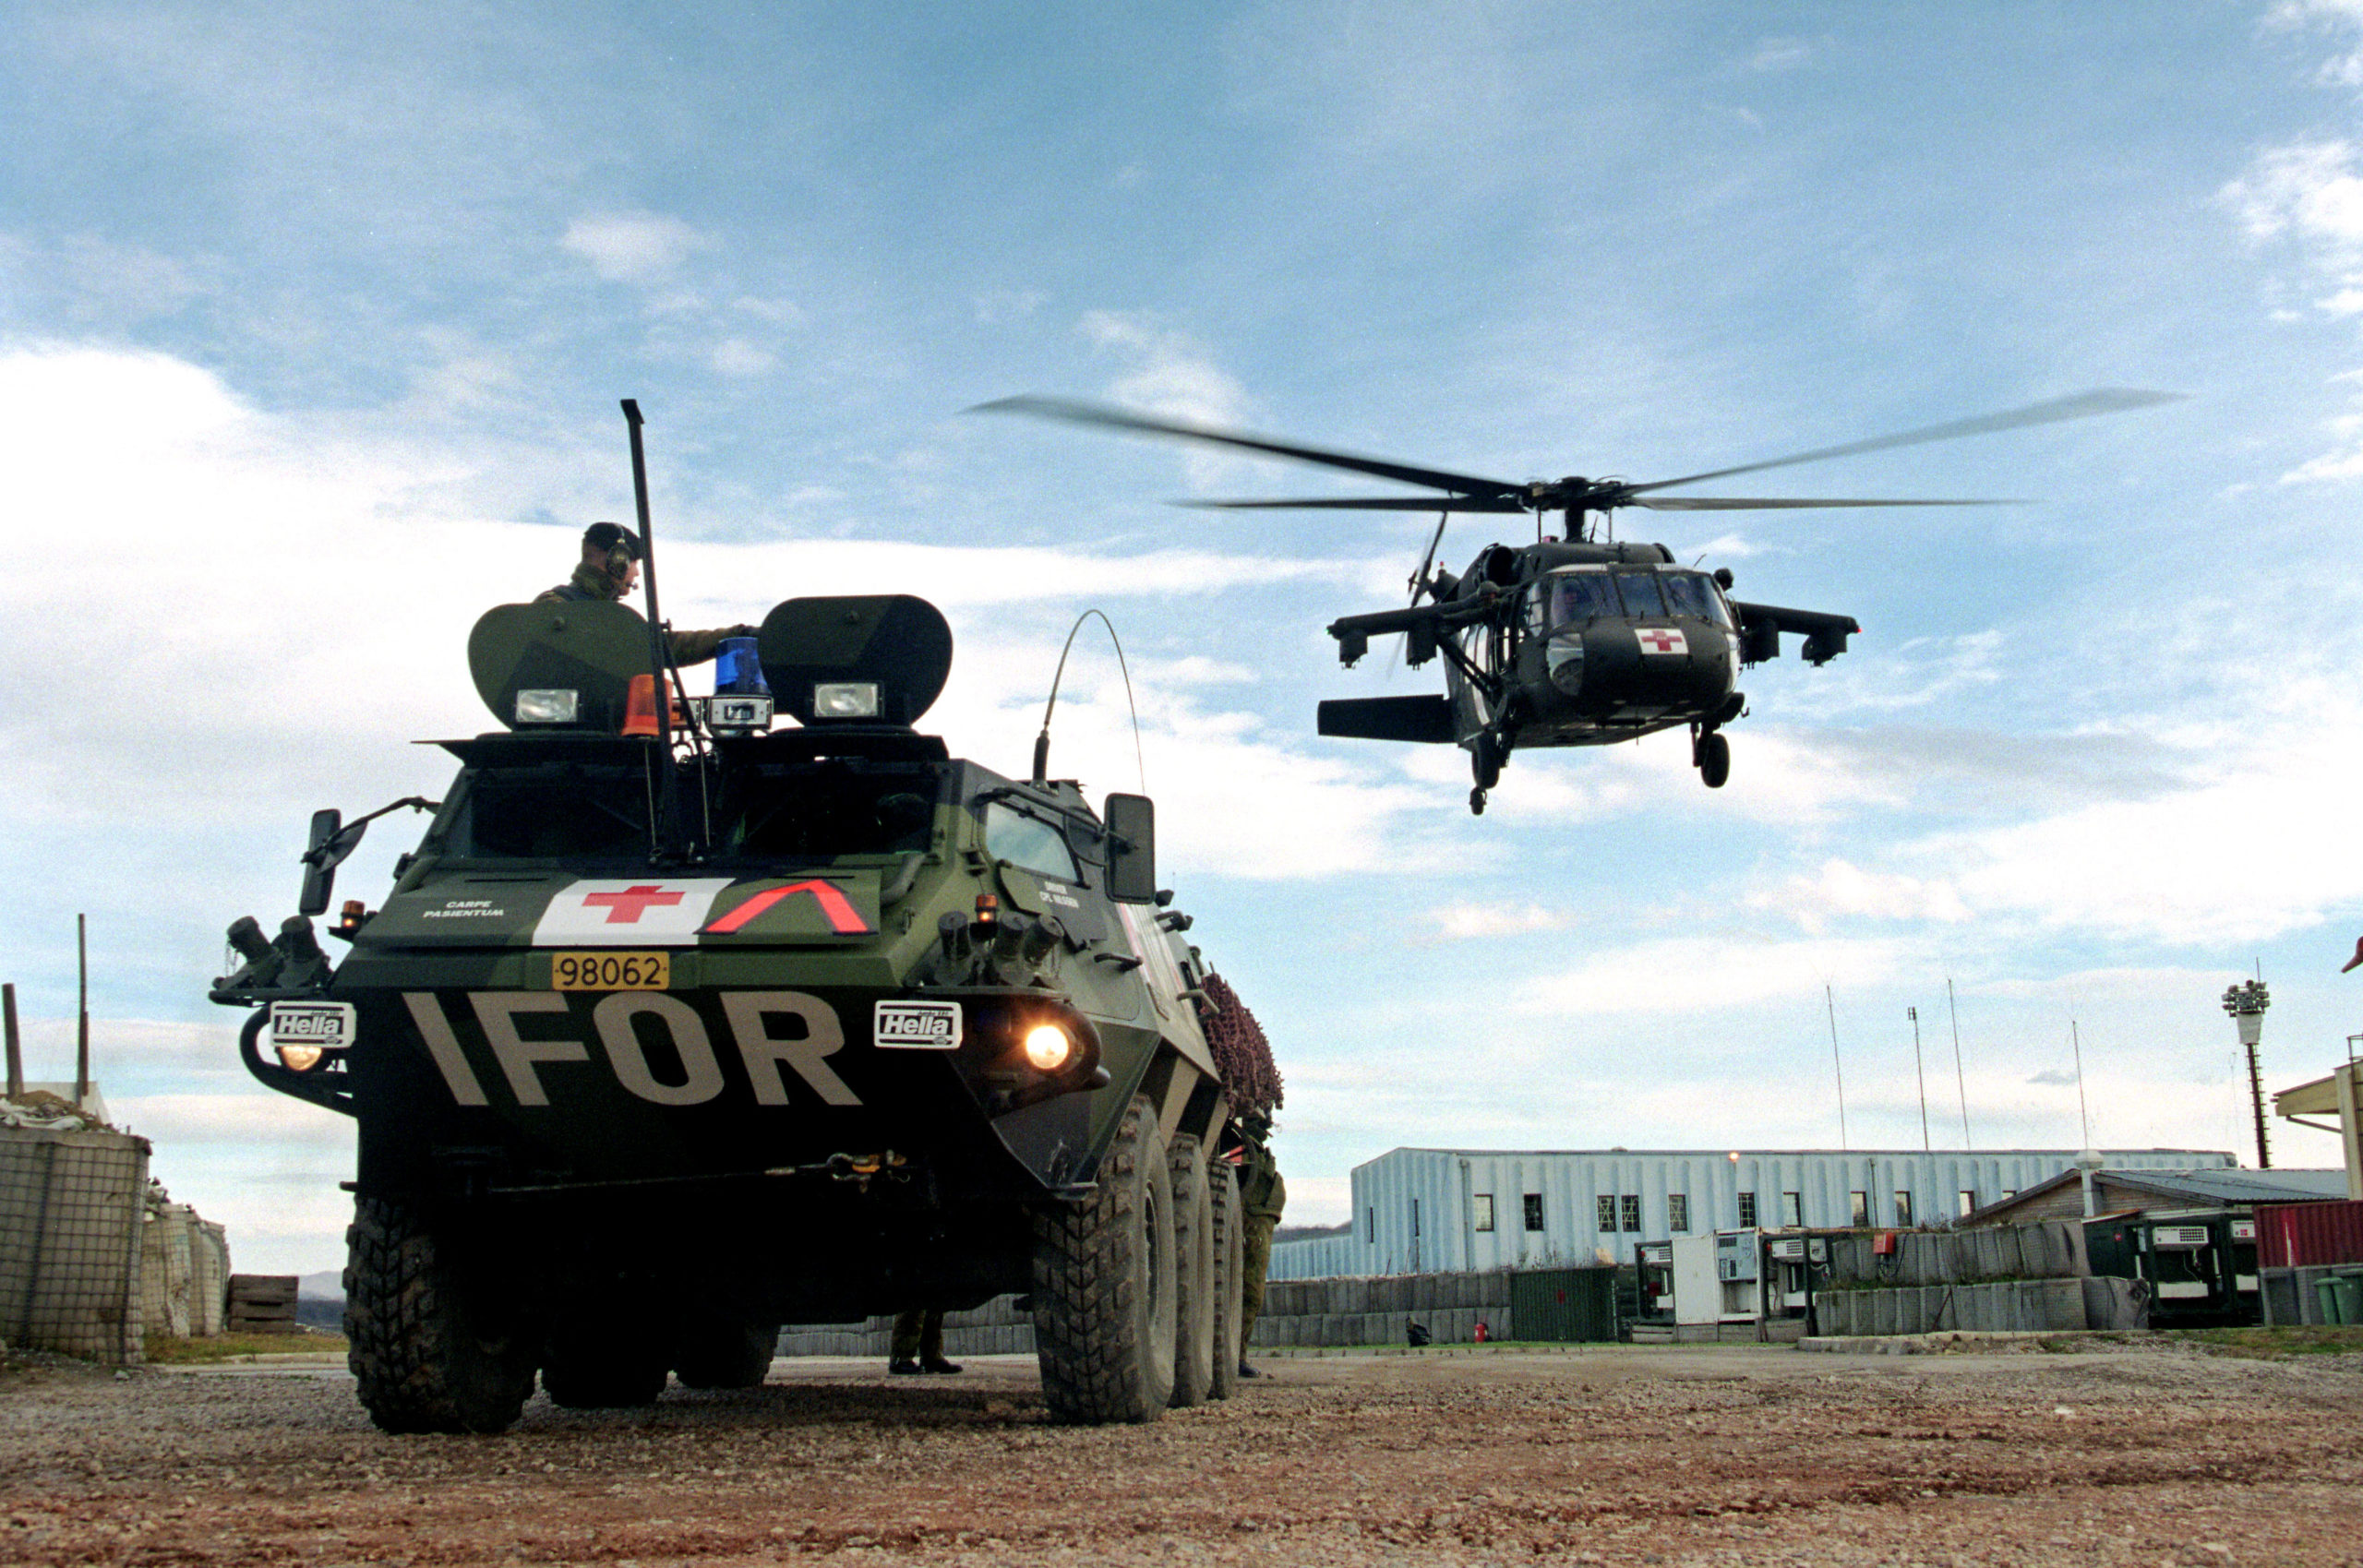 militært kjøretøy merket med IFOR bak står foran et helikopter som holder på å lande